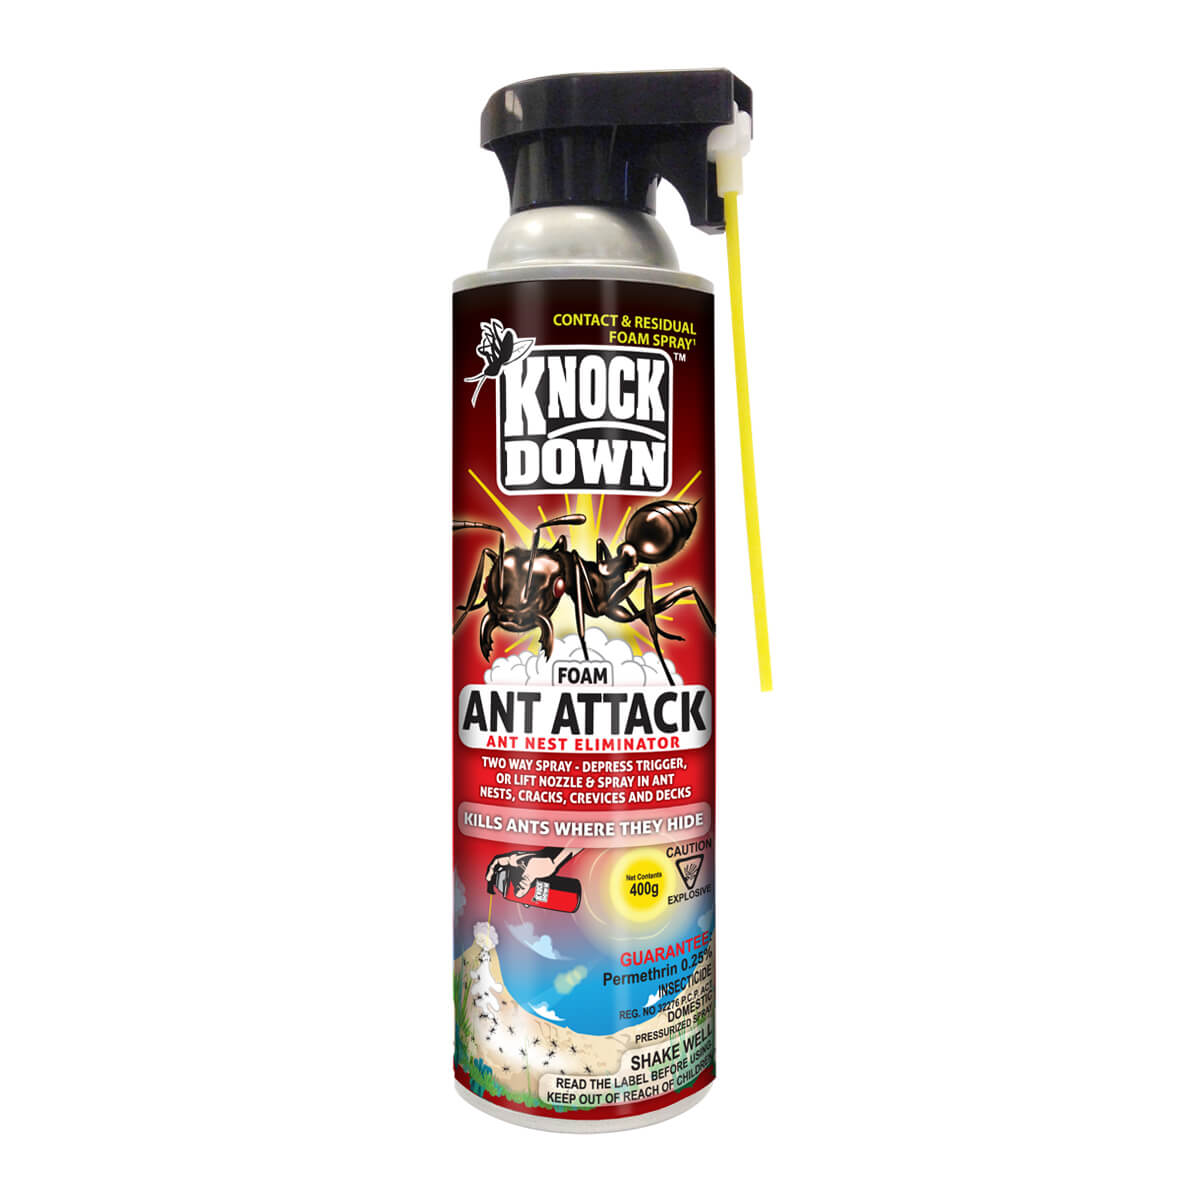 Knock Down Ant Attack Nest Eliminator Foam - 400 g